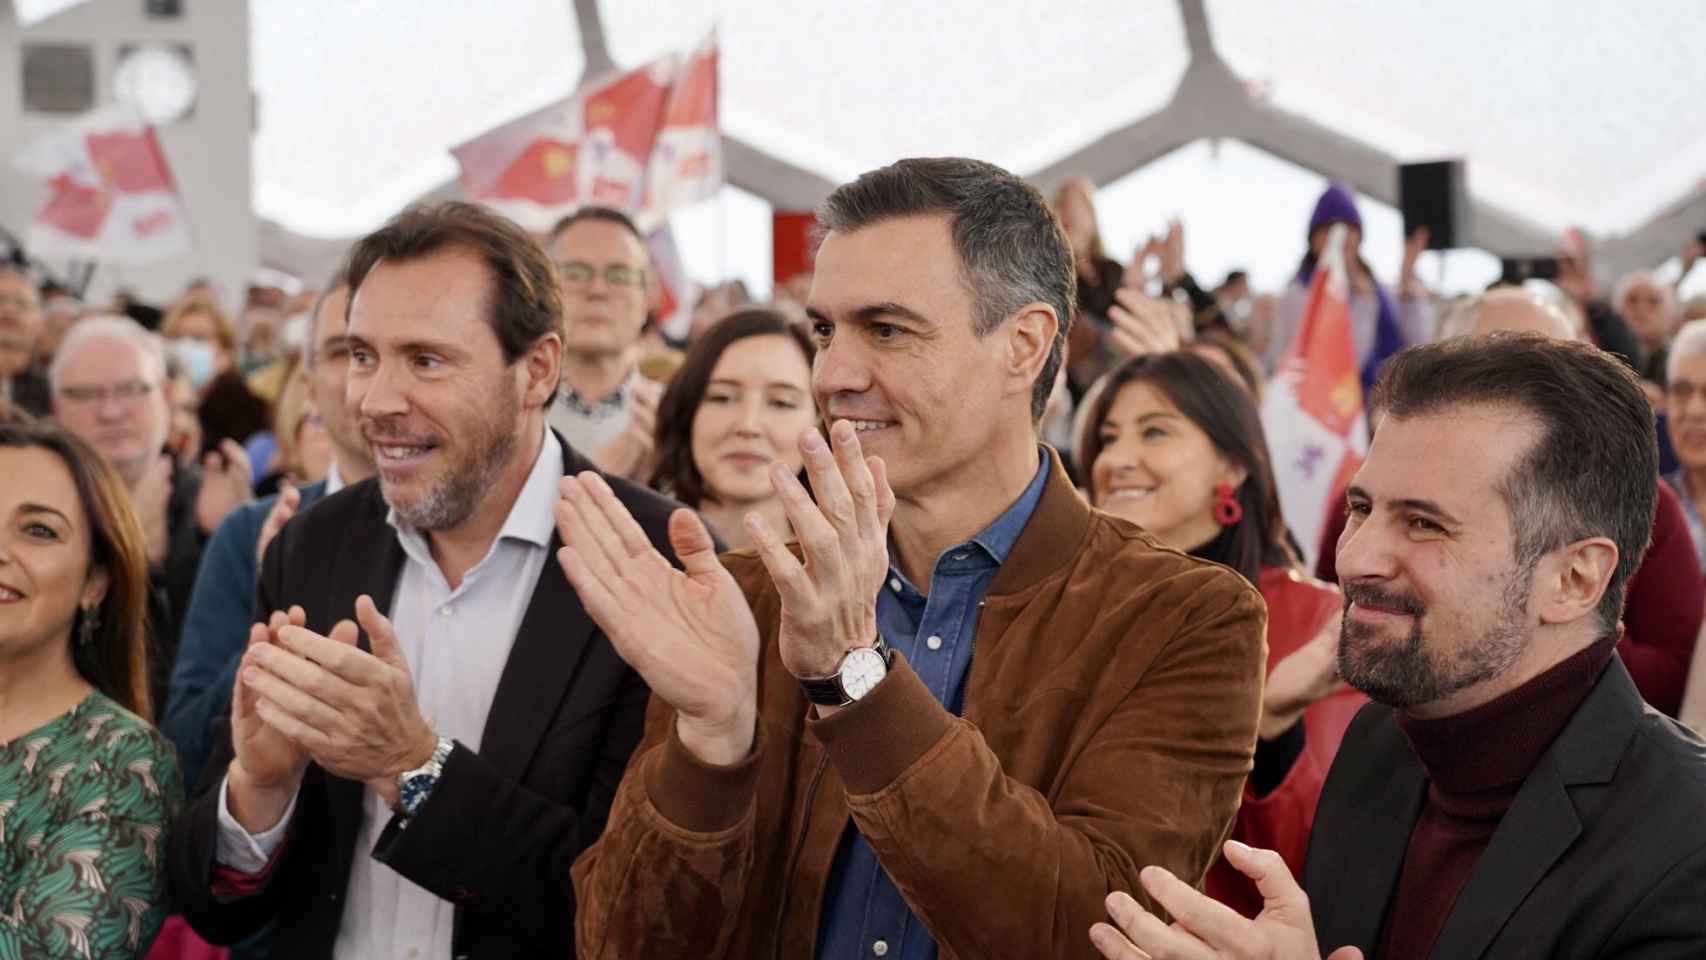 Óscar Puente, Pedro Sánchez y Luis Tudanca, durante el acto político del PSOE en Valladolid